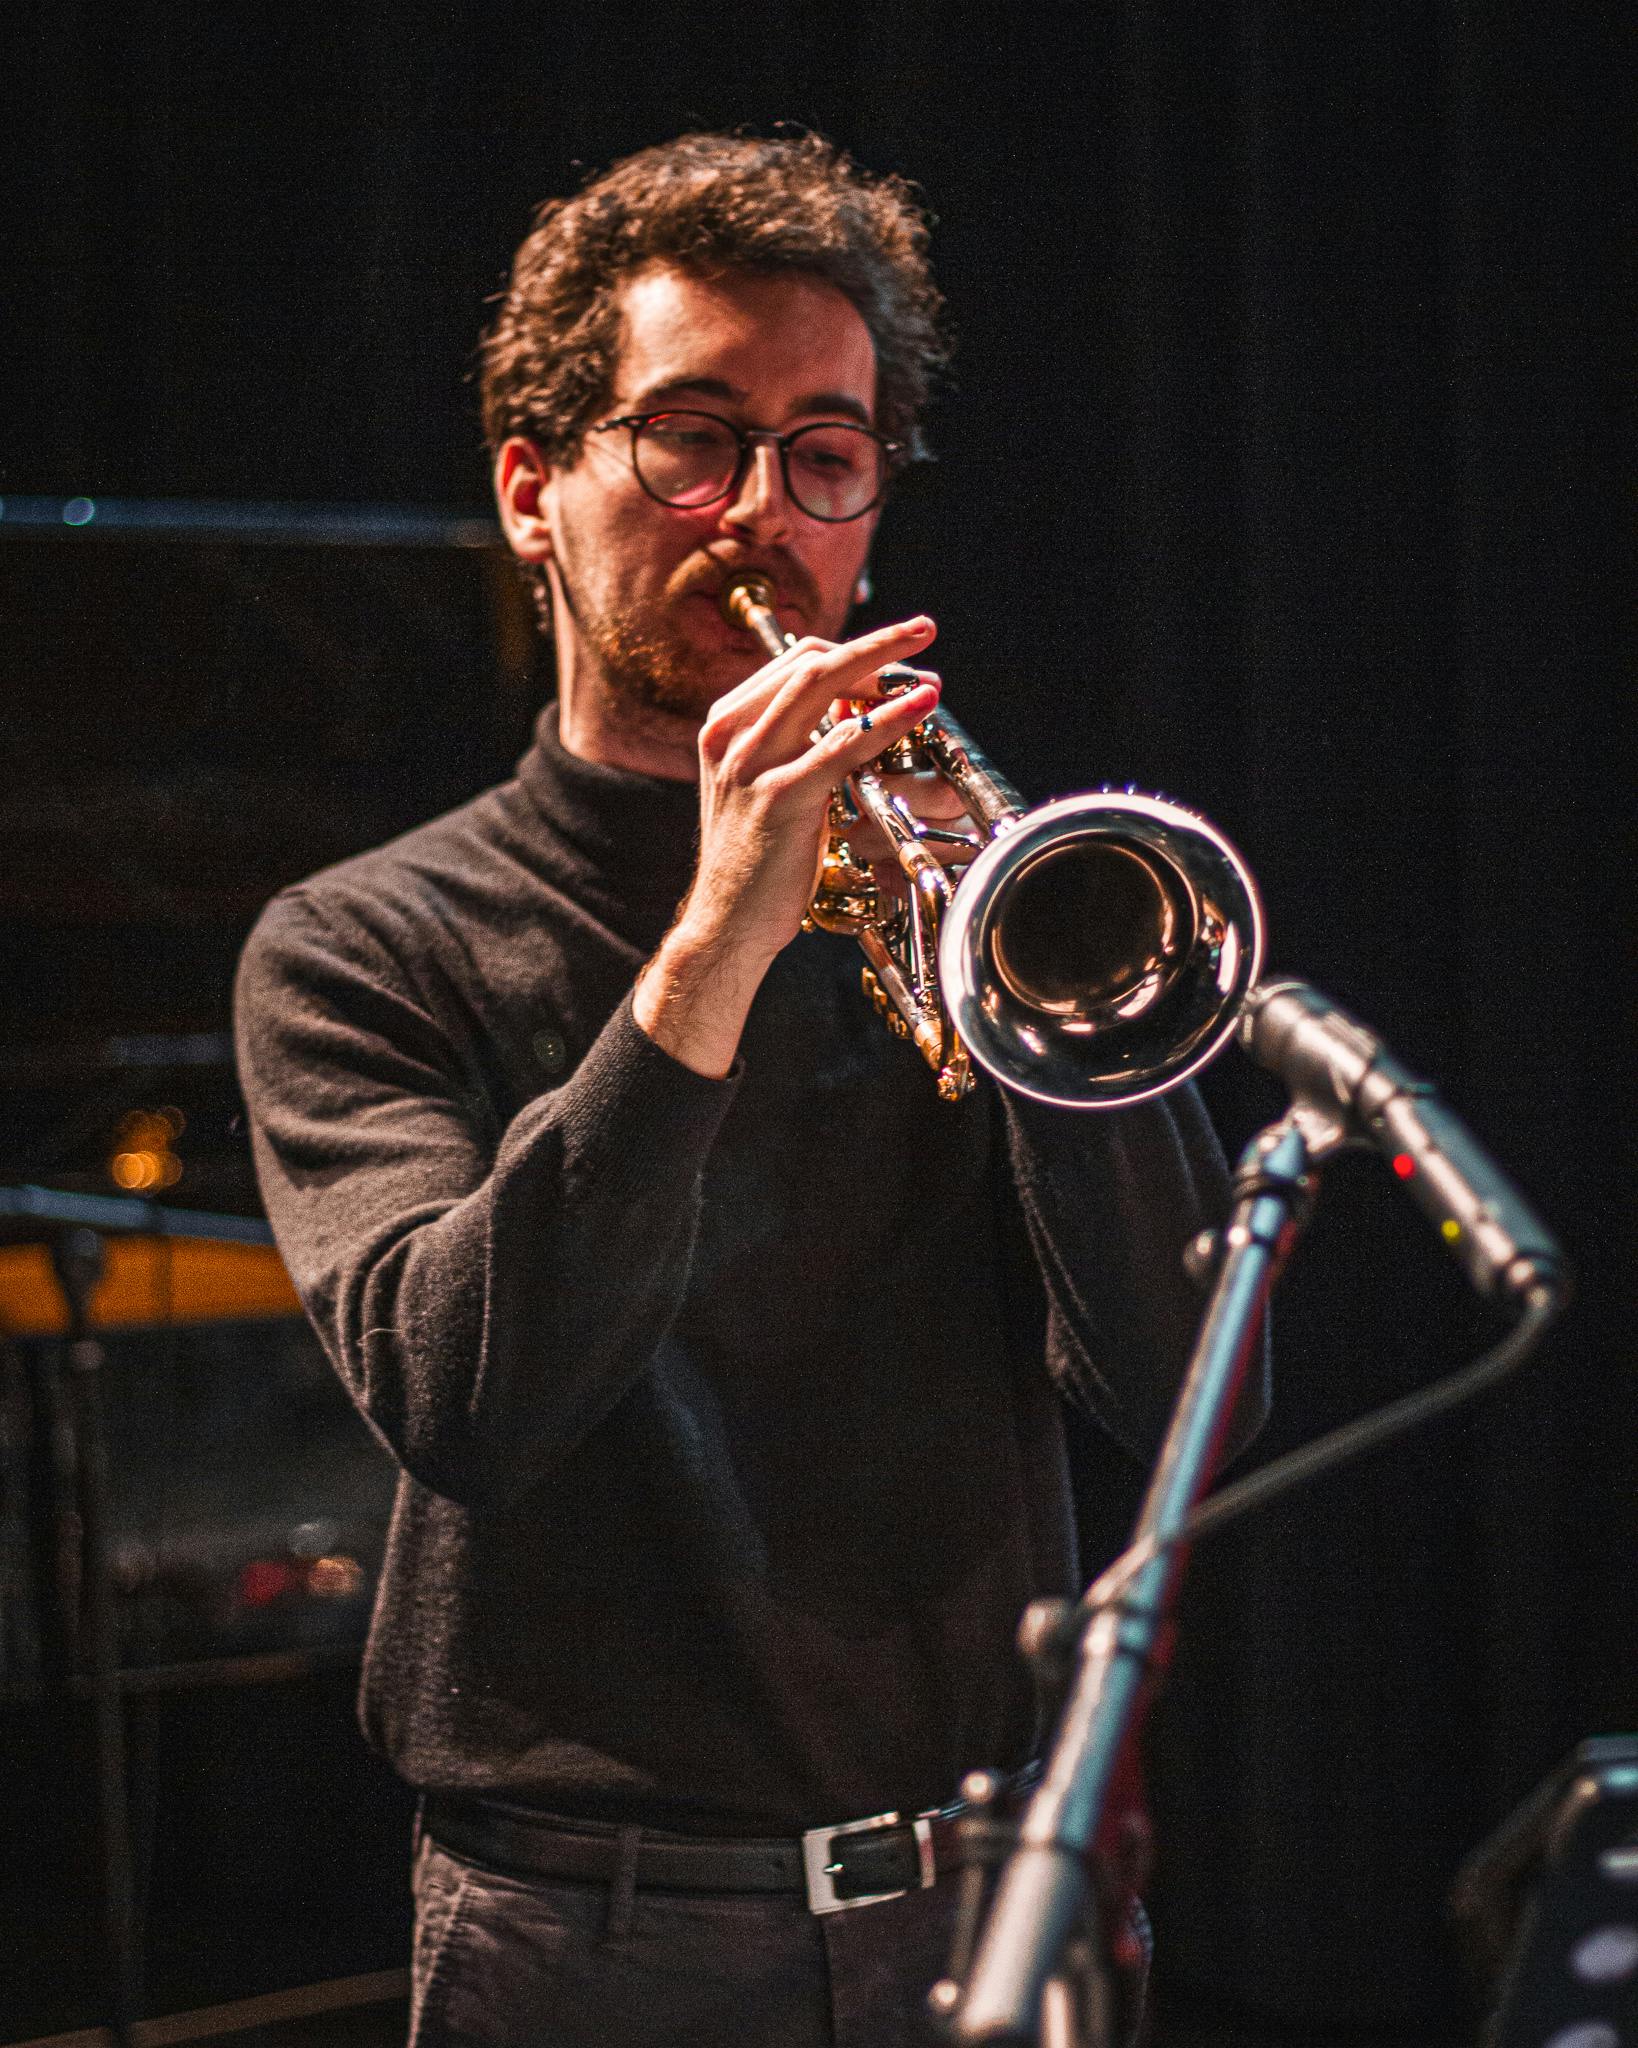 Cours de trompette  Ecole de musique Lausanne